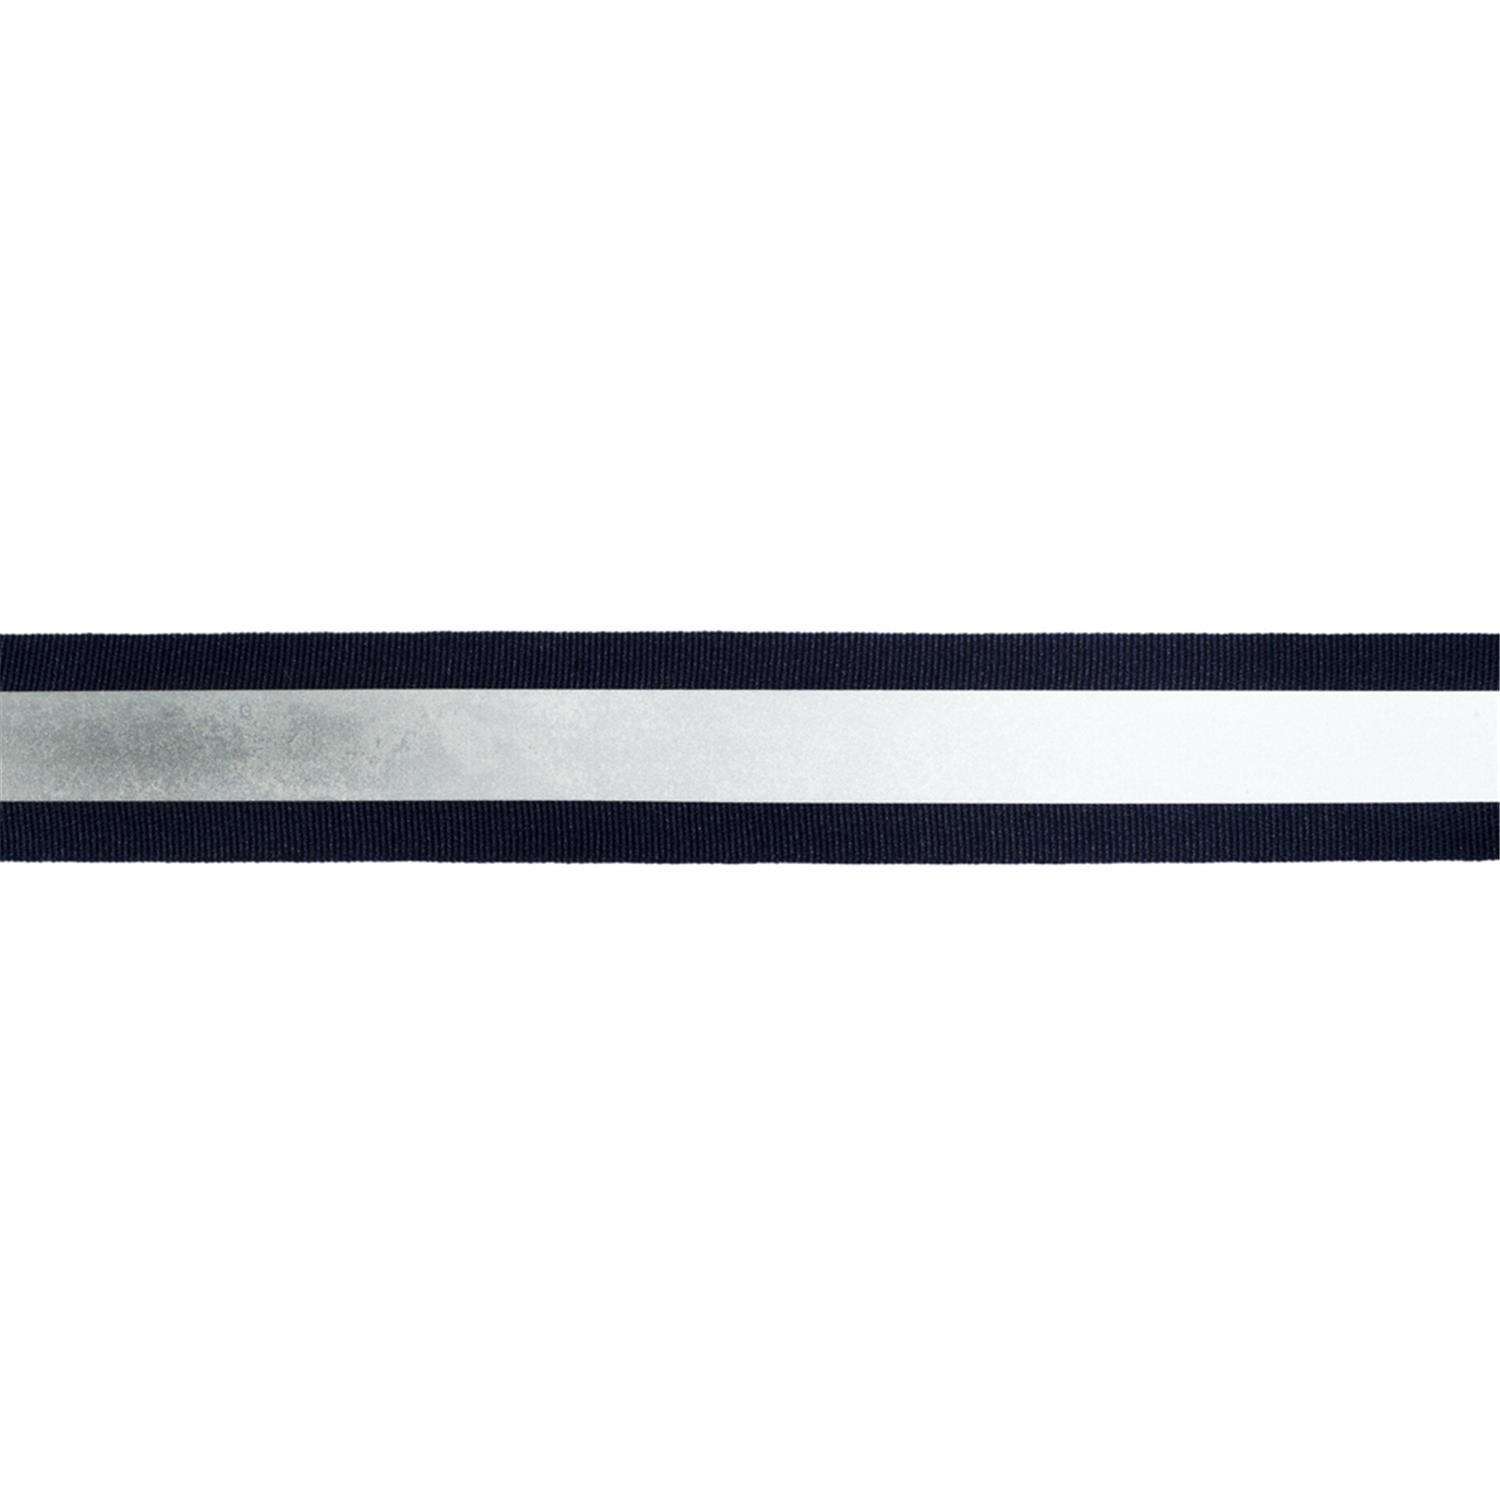 Reflektorband 30mm breit in 3 Farben schwarz-silber 05 Meter